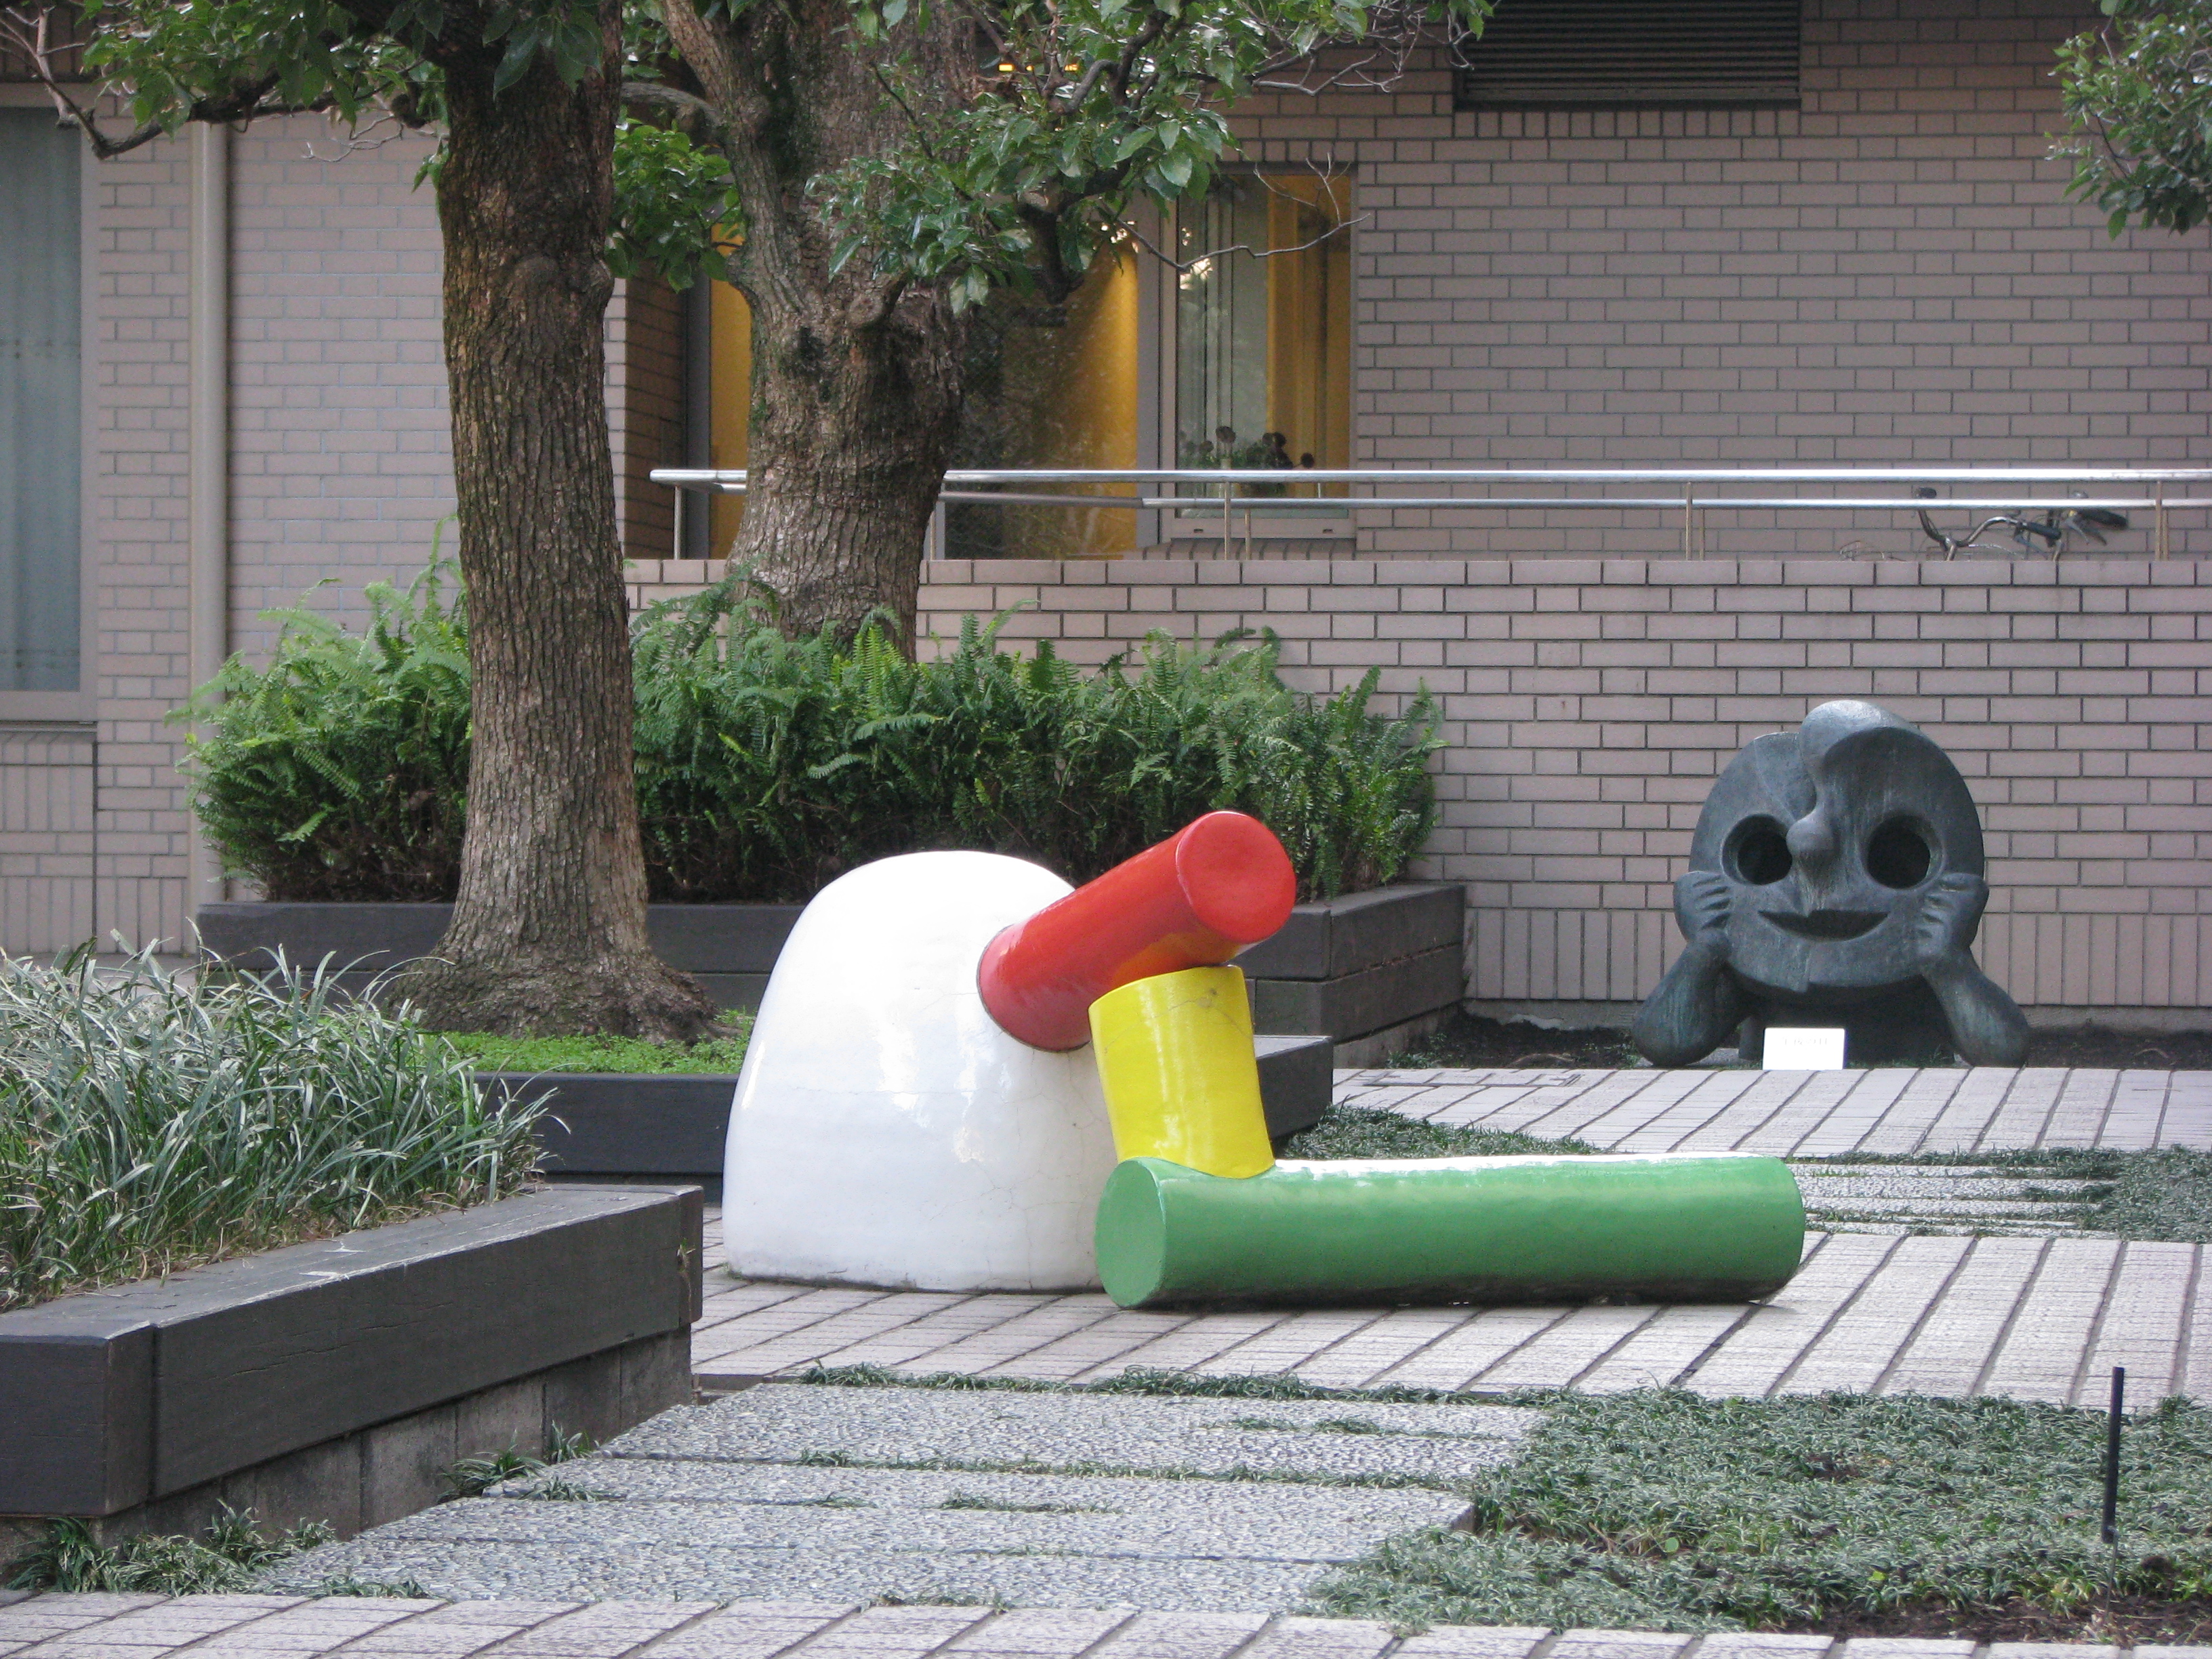 元永定正さんから寄贈された作品「しろからだんだん」が
岡本太郎さんの「午後の顔」に見守られるように飾られていました。